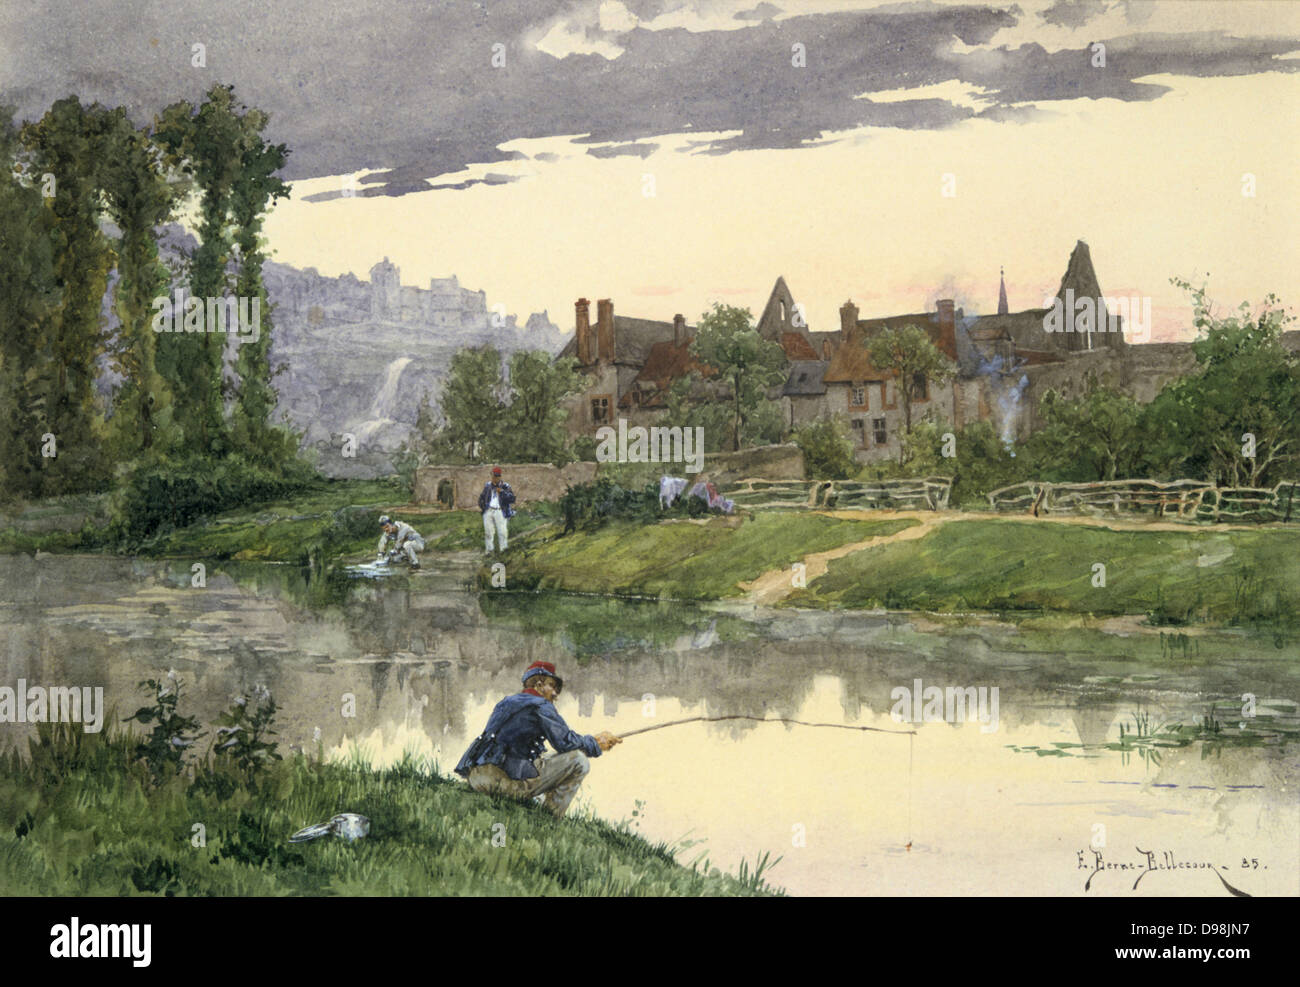 Soldaten durch einen Fluss', Aquarell. Etienne Bern Bellecour (1838-1910), französischer Maler. Im Vordergrund ein Soldat ist Angeln, während auf dem anderen Ufer ein anderes ist, seine Wäsche zu waschen. Stockfoto